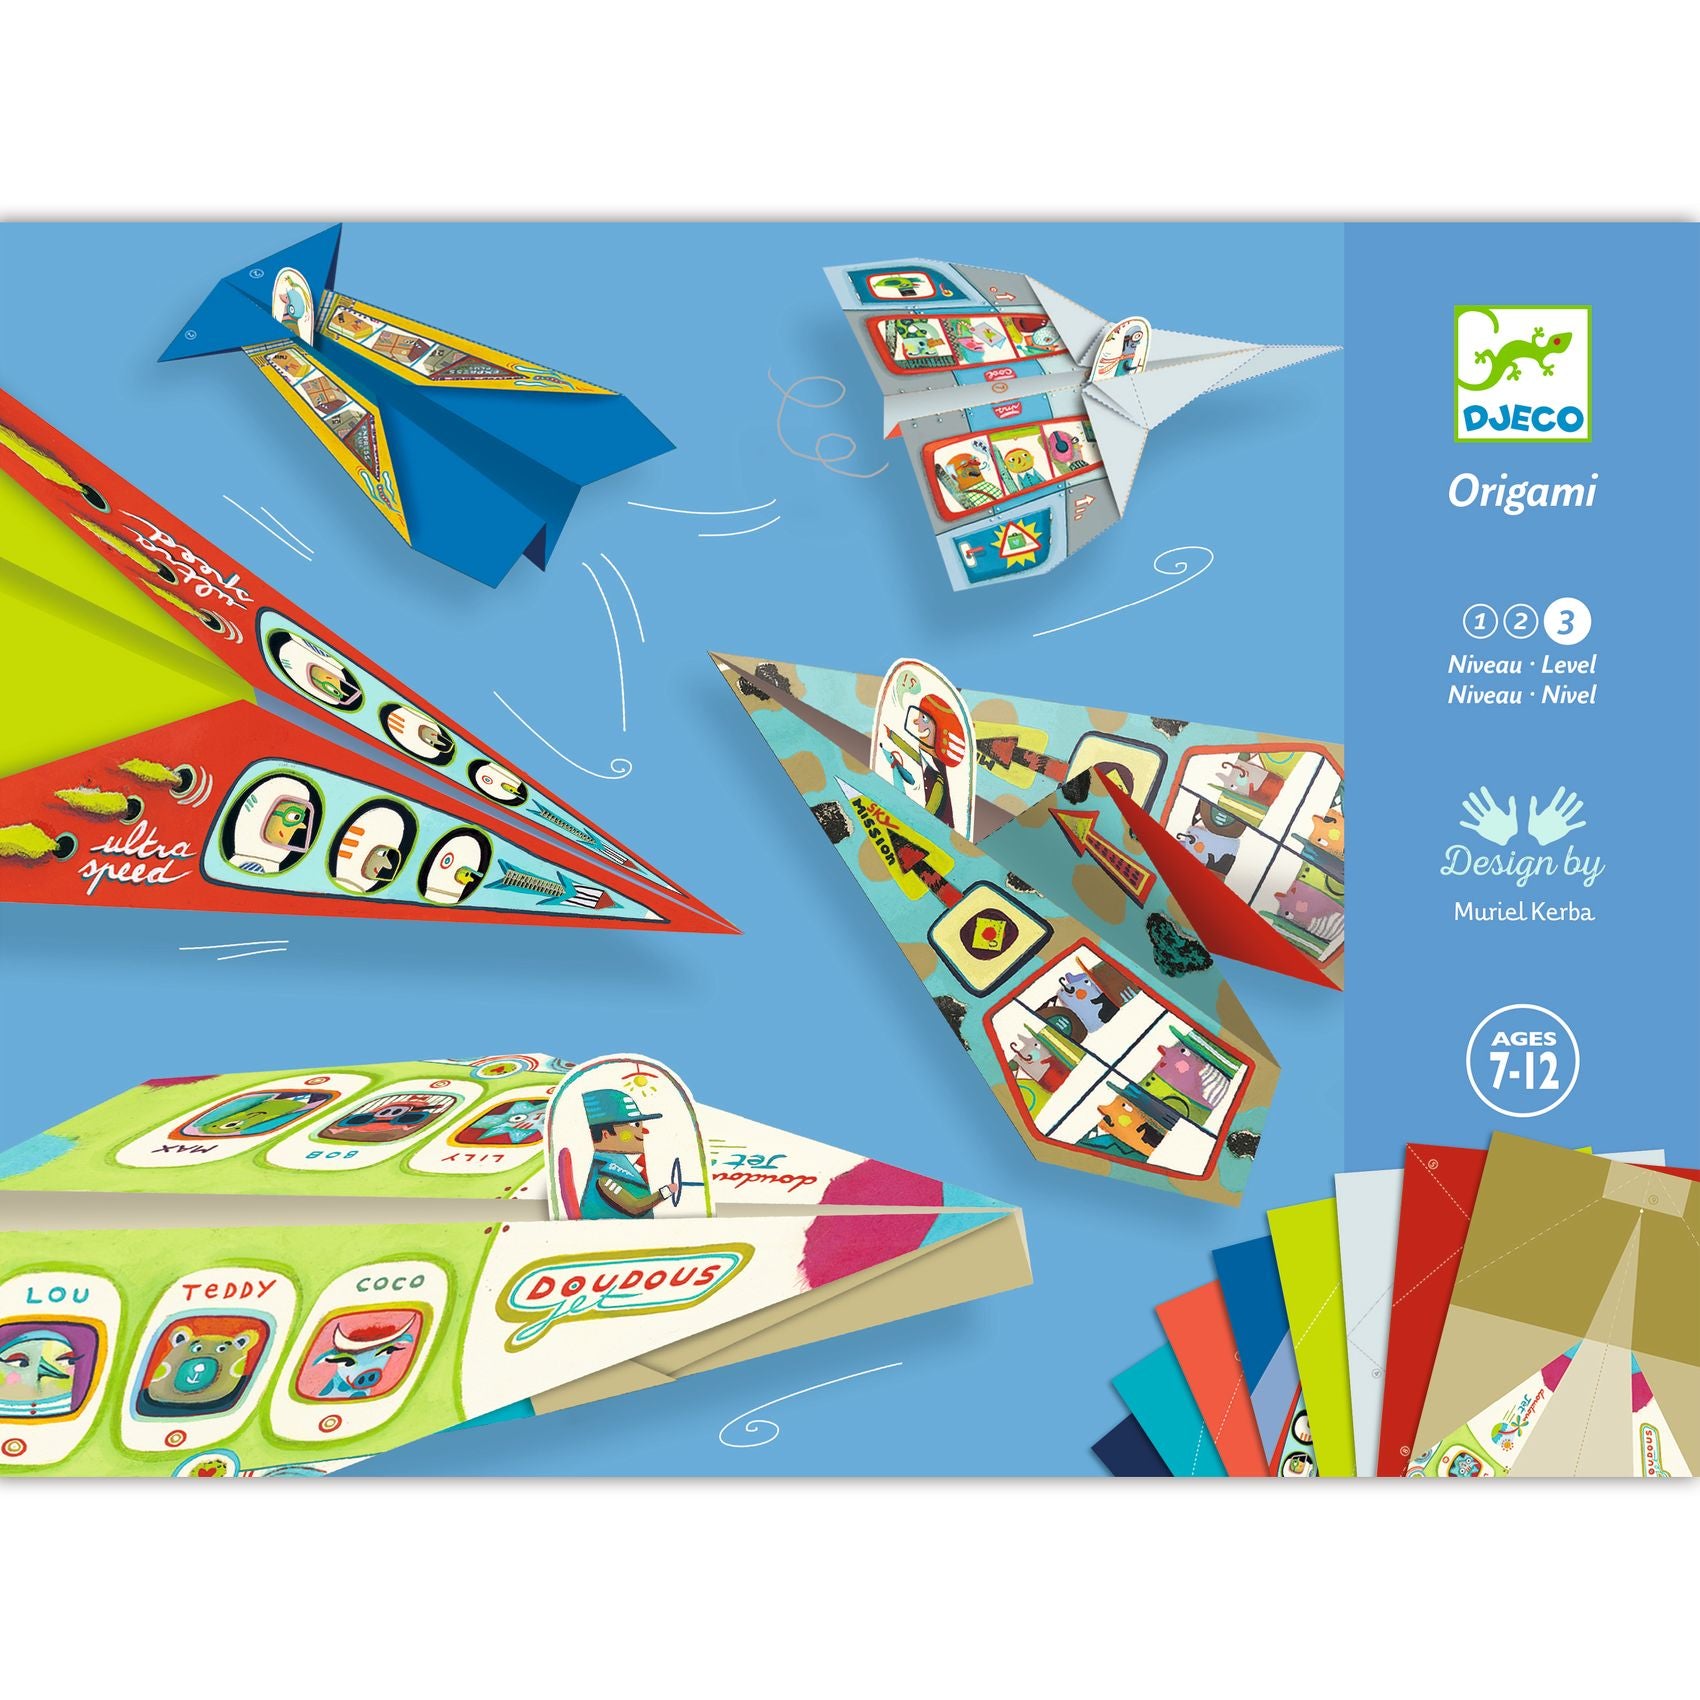 Djeco Origami – Planes